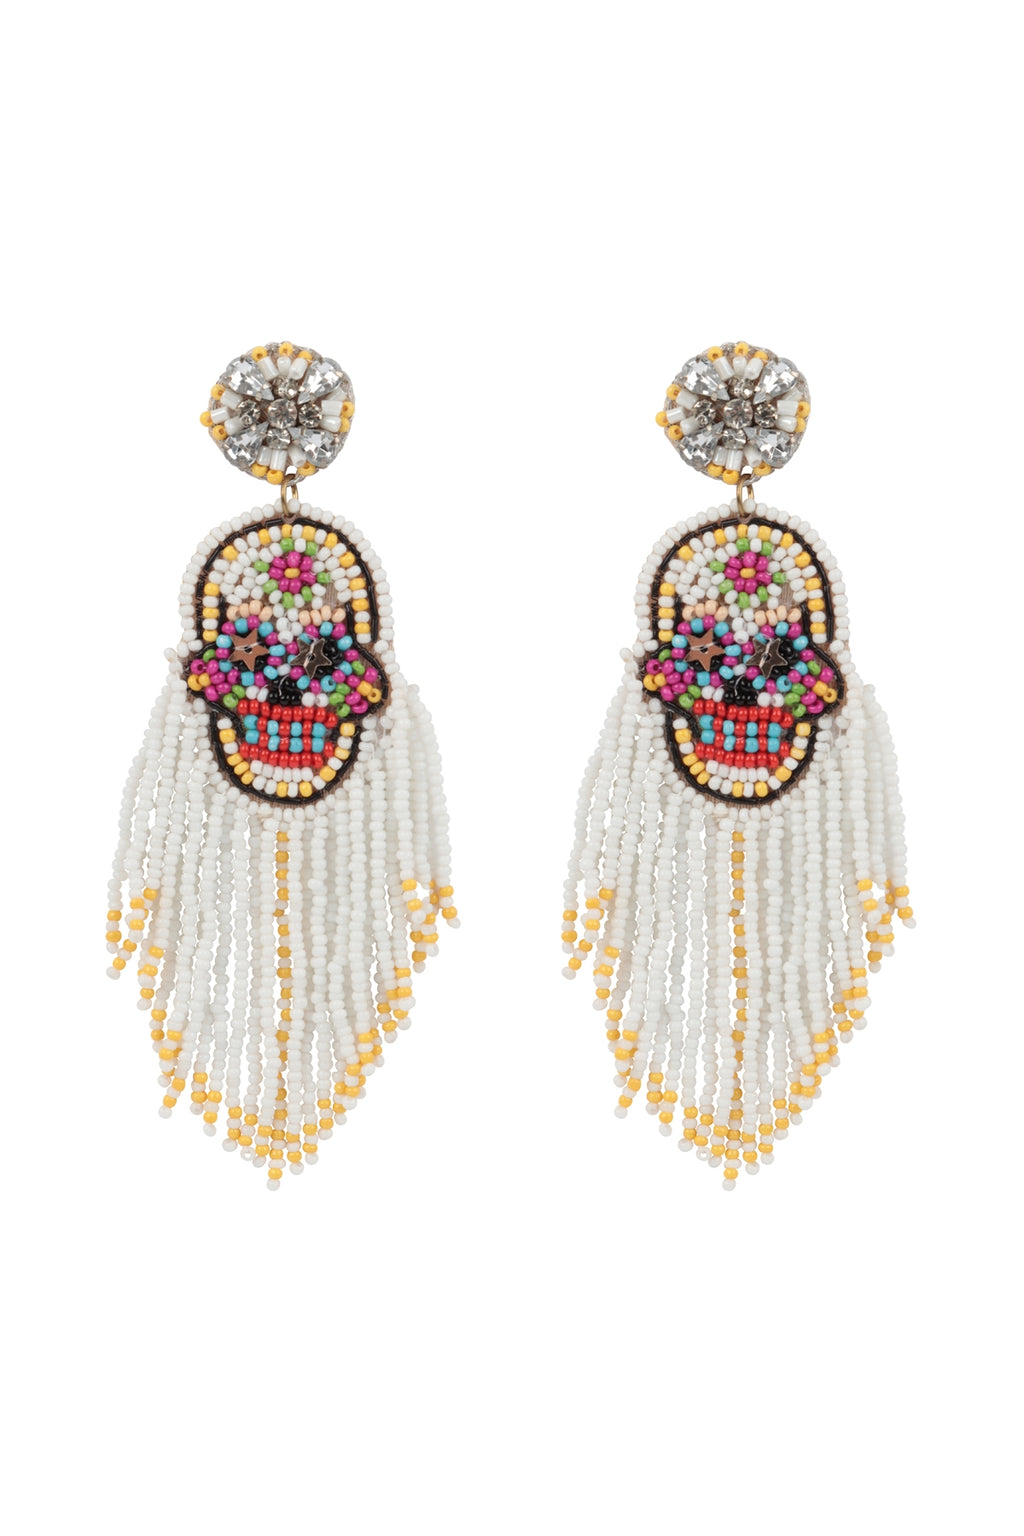 Halloween Skull Seed Beads Fringe Post Earrings White - Pack of 6